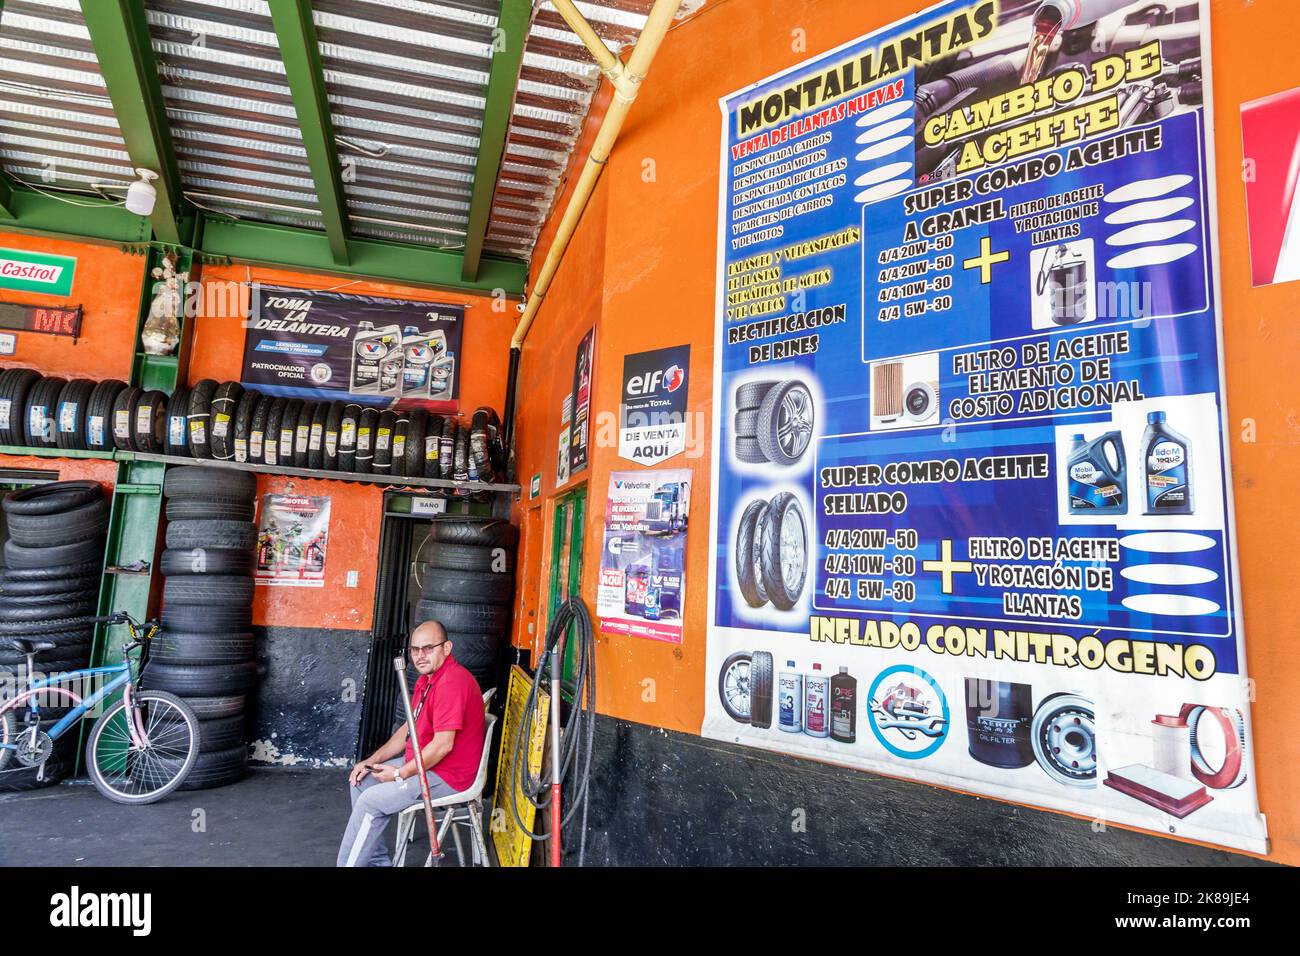 Bogota Colombie,Engativa Calle 63,auto mécanicien atelier de réparation garage signe langue espagnole changement d'huile homme hommes intérieur intérieur intérieur intérieur neuf pneus véhicule Banque D'Images